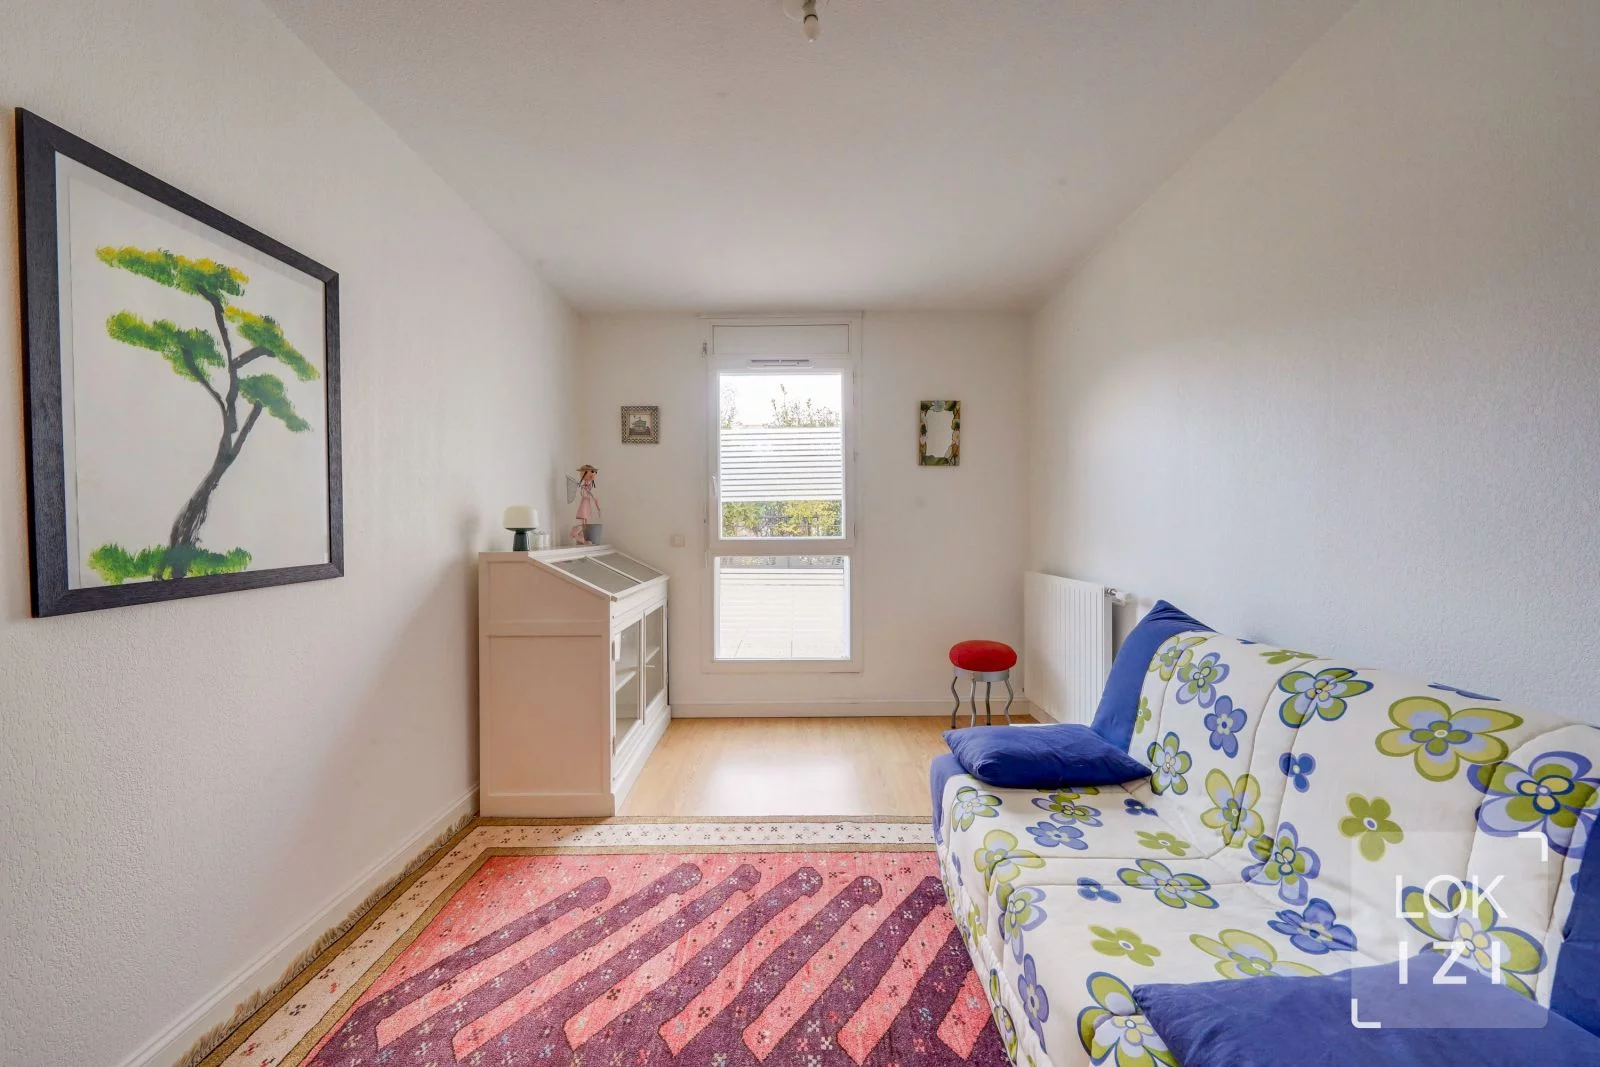 Location appartement meublé 3 pièces 76m² (Bruges - Bordeaux Lac)